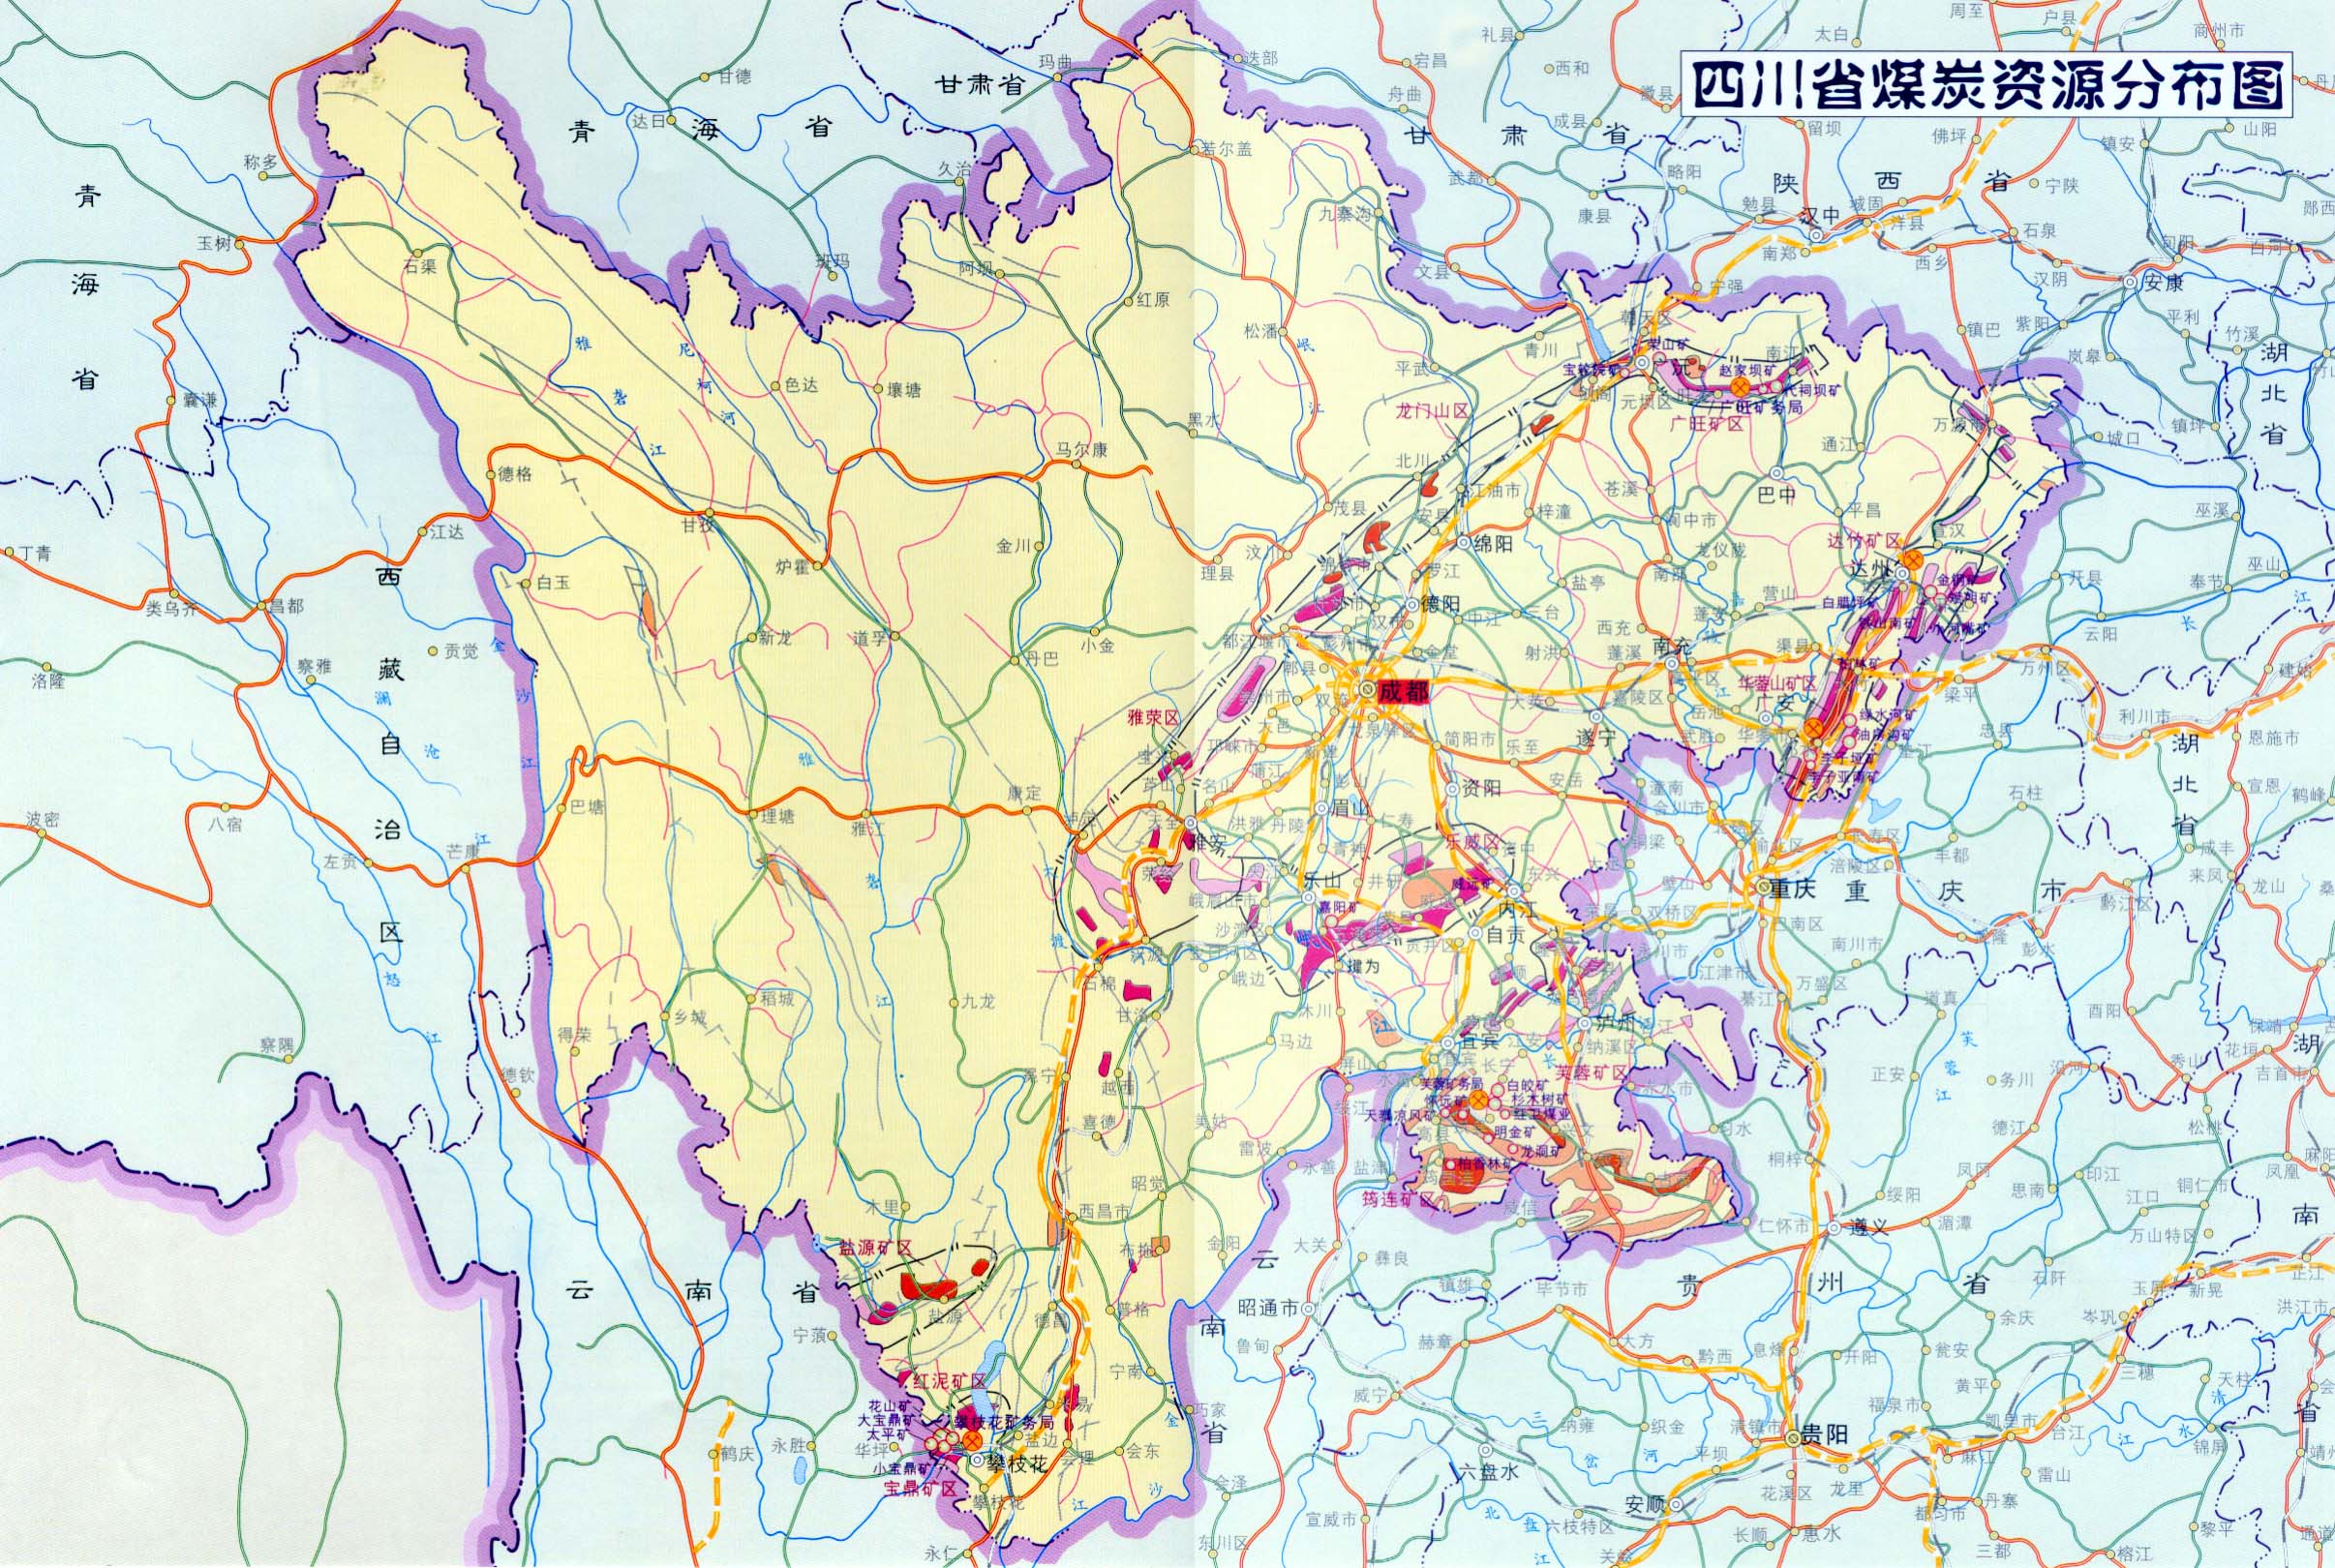 中国人口最多的县_淄博县人口数